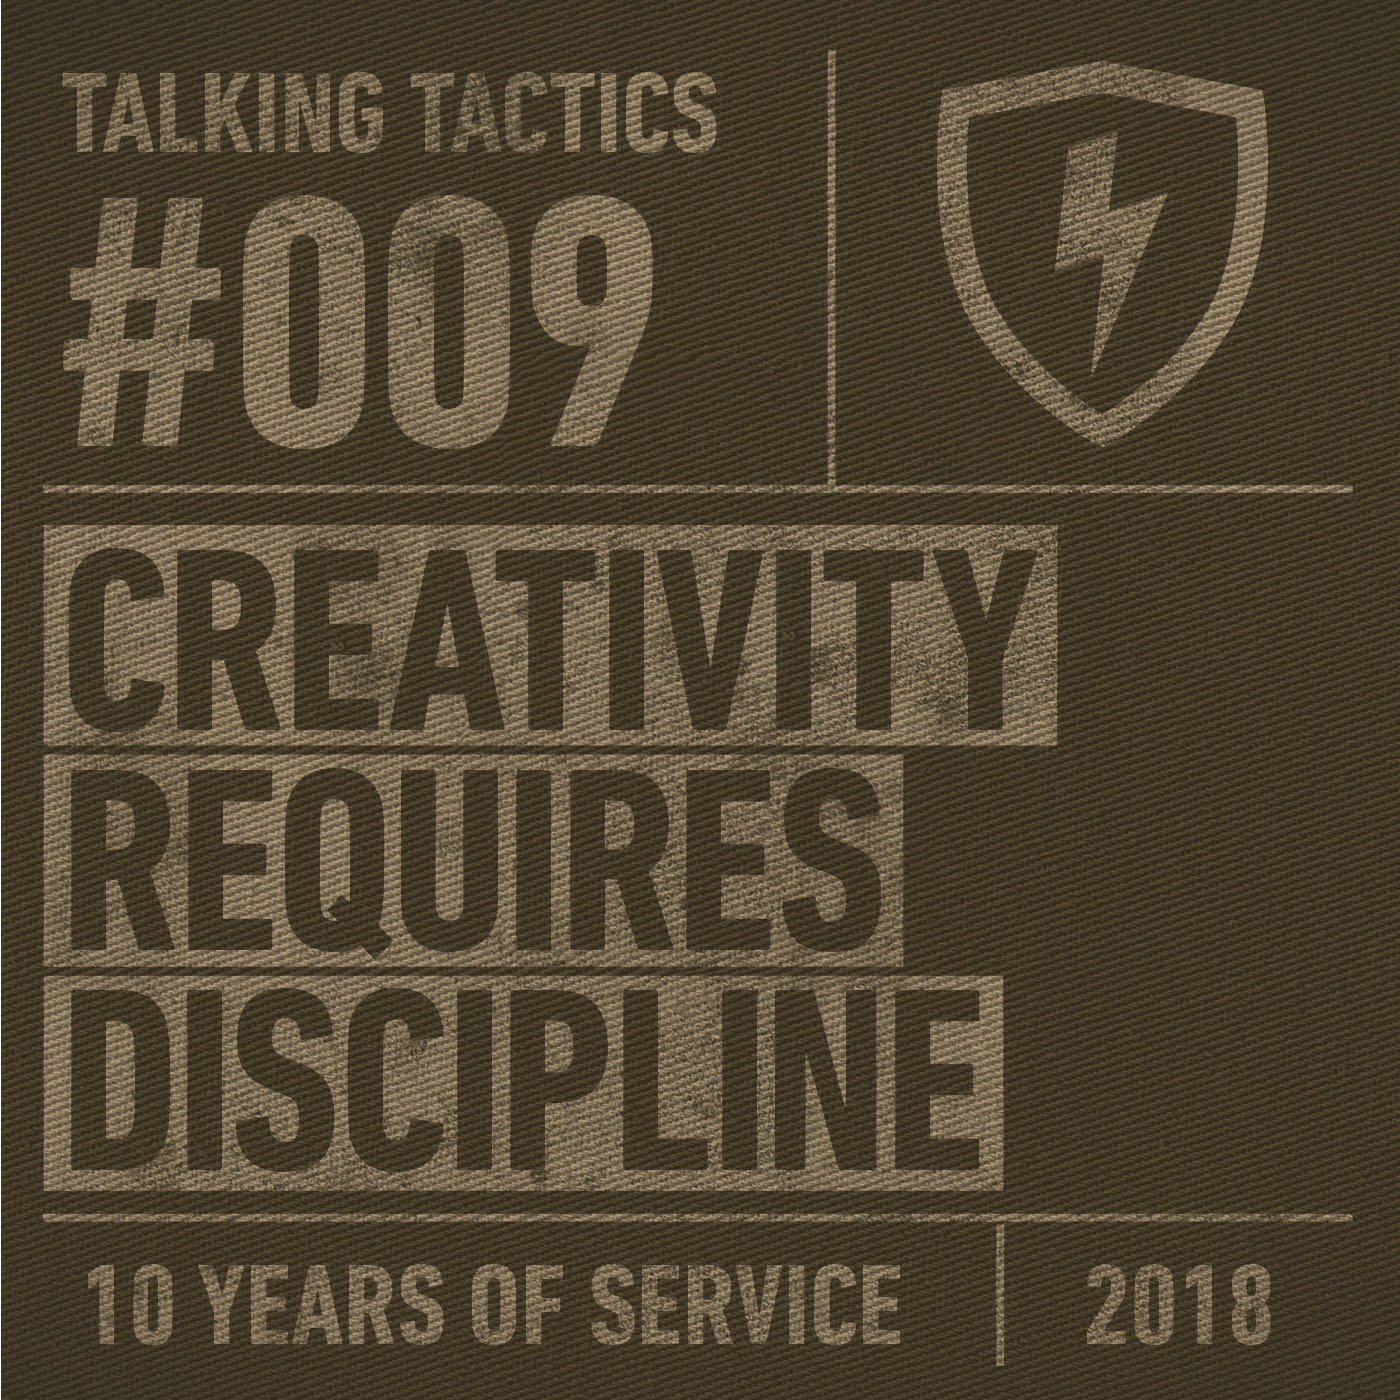 TalkingTactics_9_CreativityRequiresDiscipline